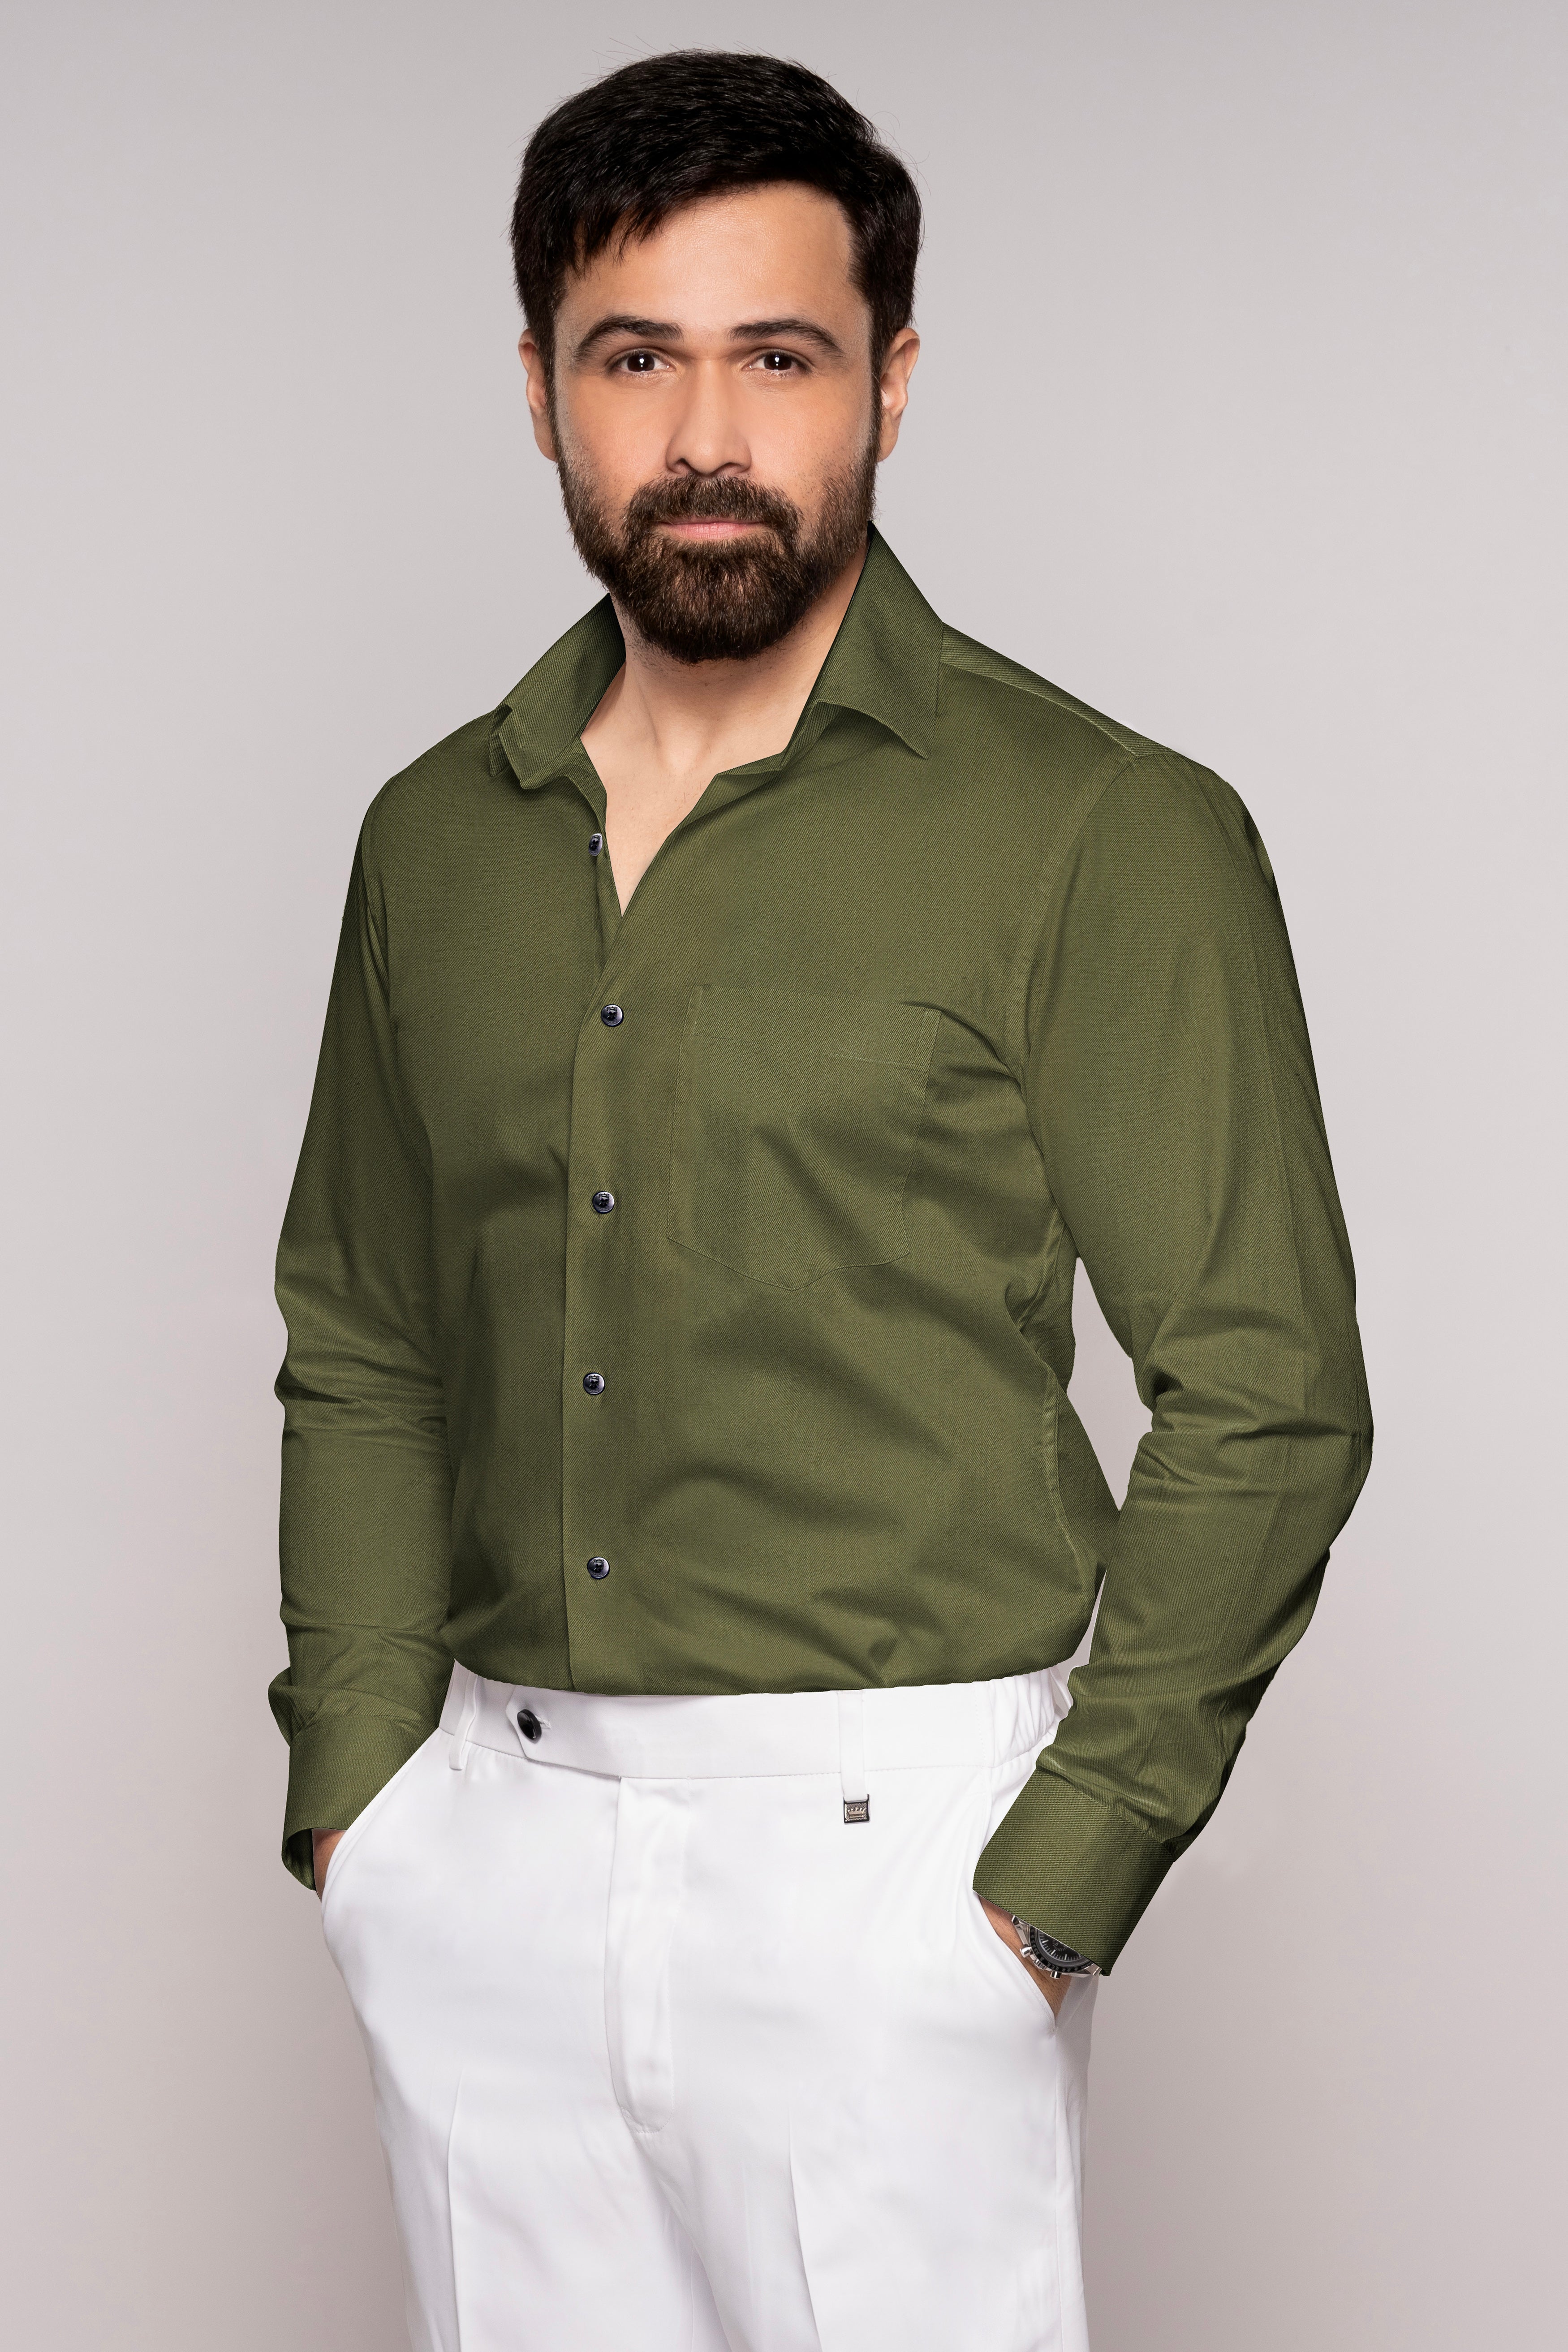 Hemlock Green Twill Premium Cotton Shirt